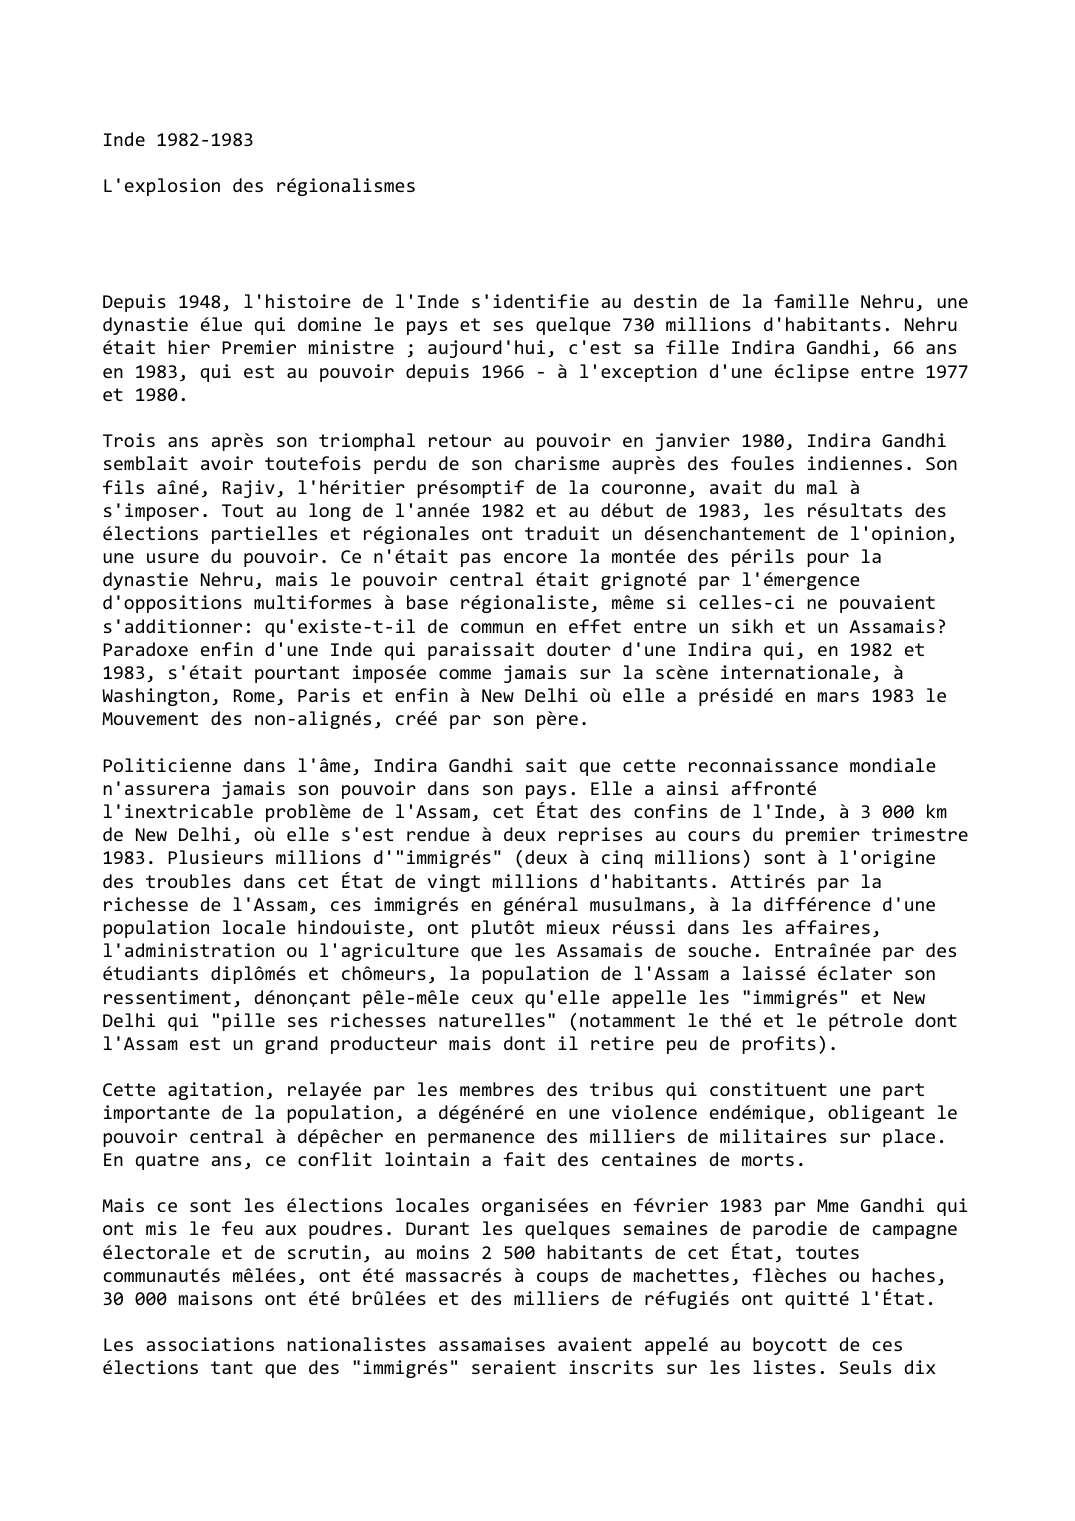 Prévisualisation du document Inde (1982-1983)

L'explosion des régionalismes